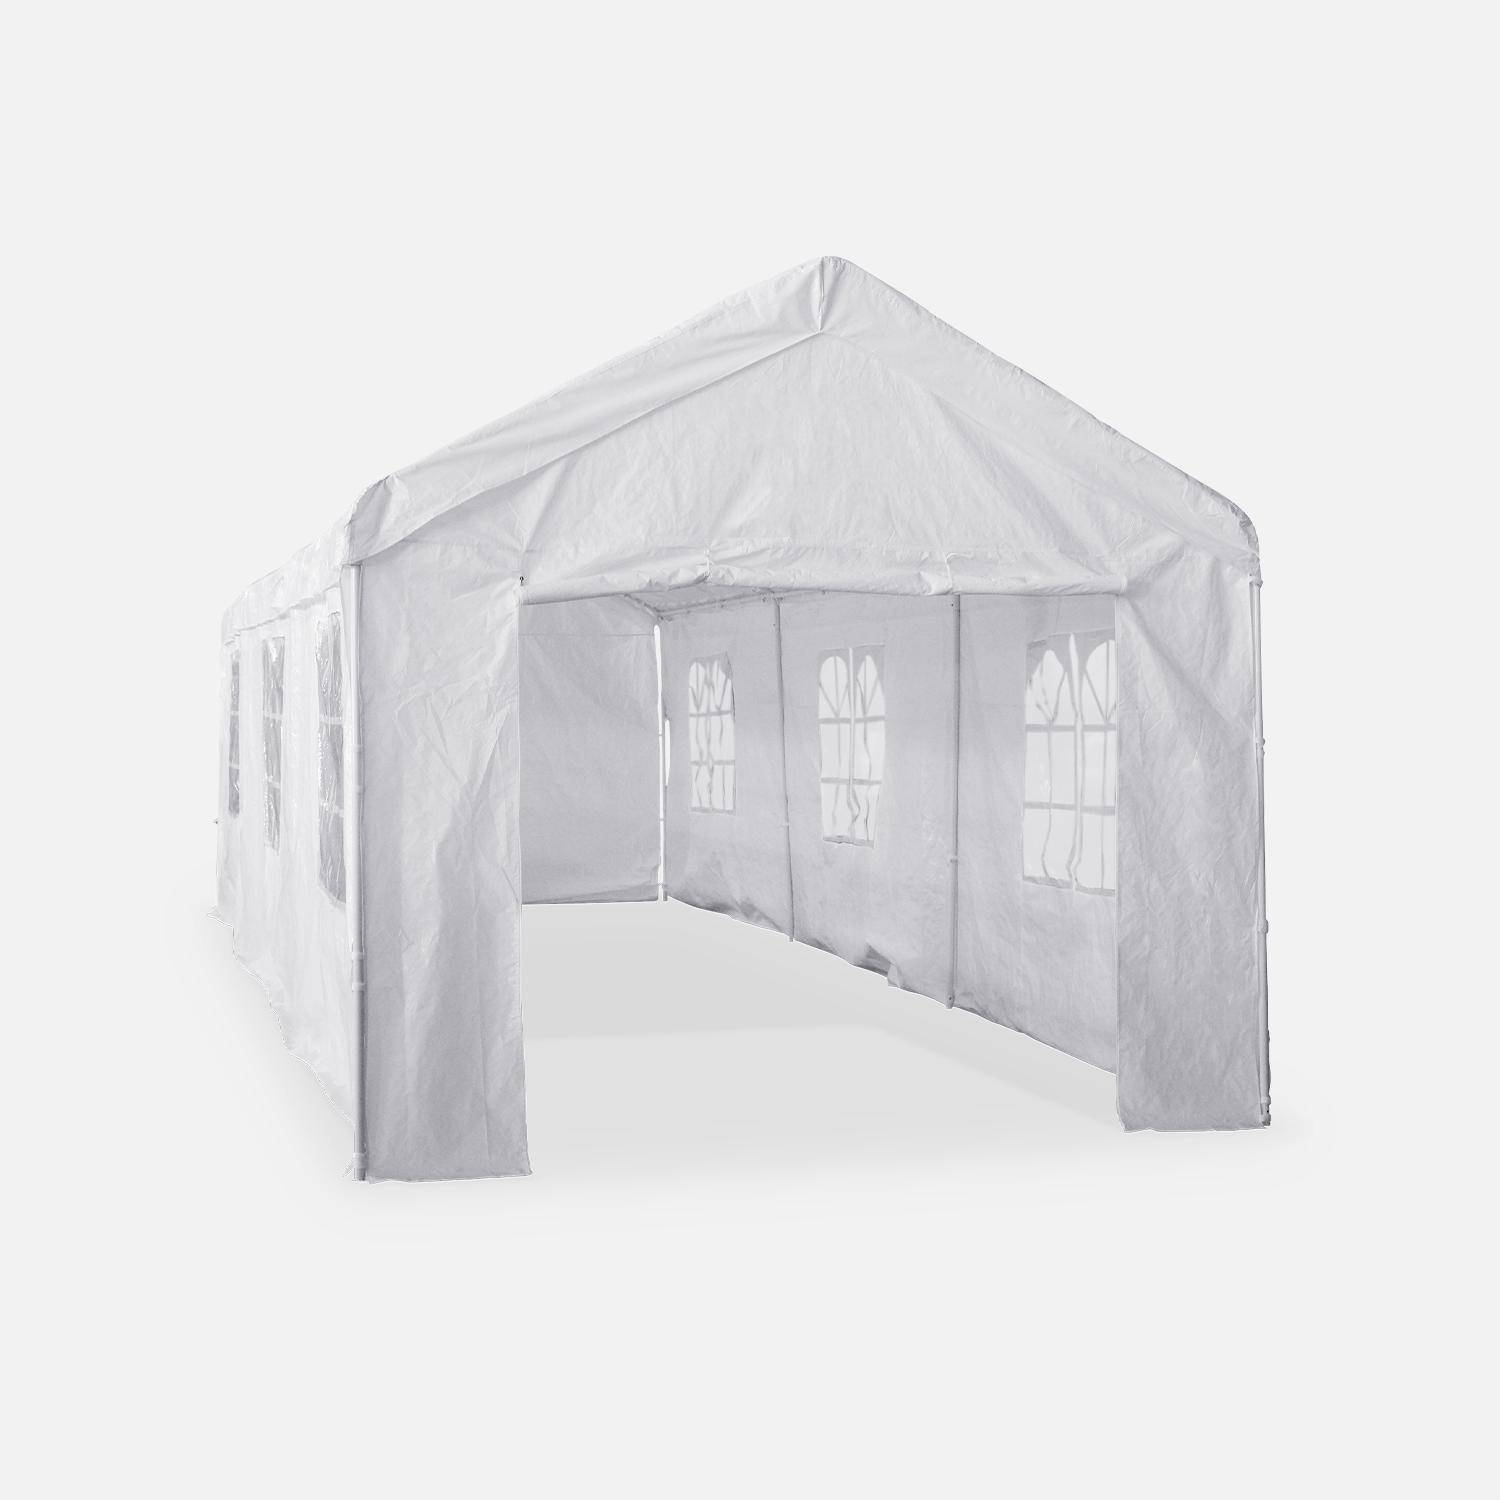 Tente de réception - Burdigala 3x9m -  Blanc, connecteurs métal, tente de jardin idéale pour réception à utiliser comme pavillon, chapiteau ou tonnelle,sweeek,Photo4